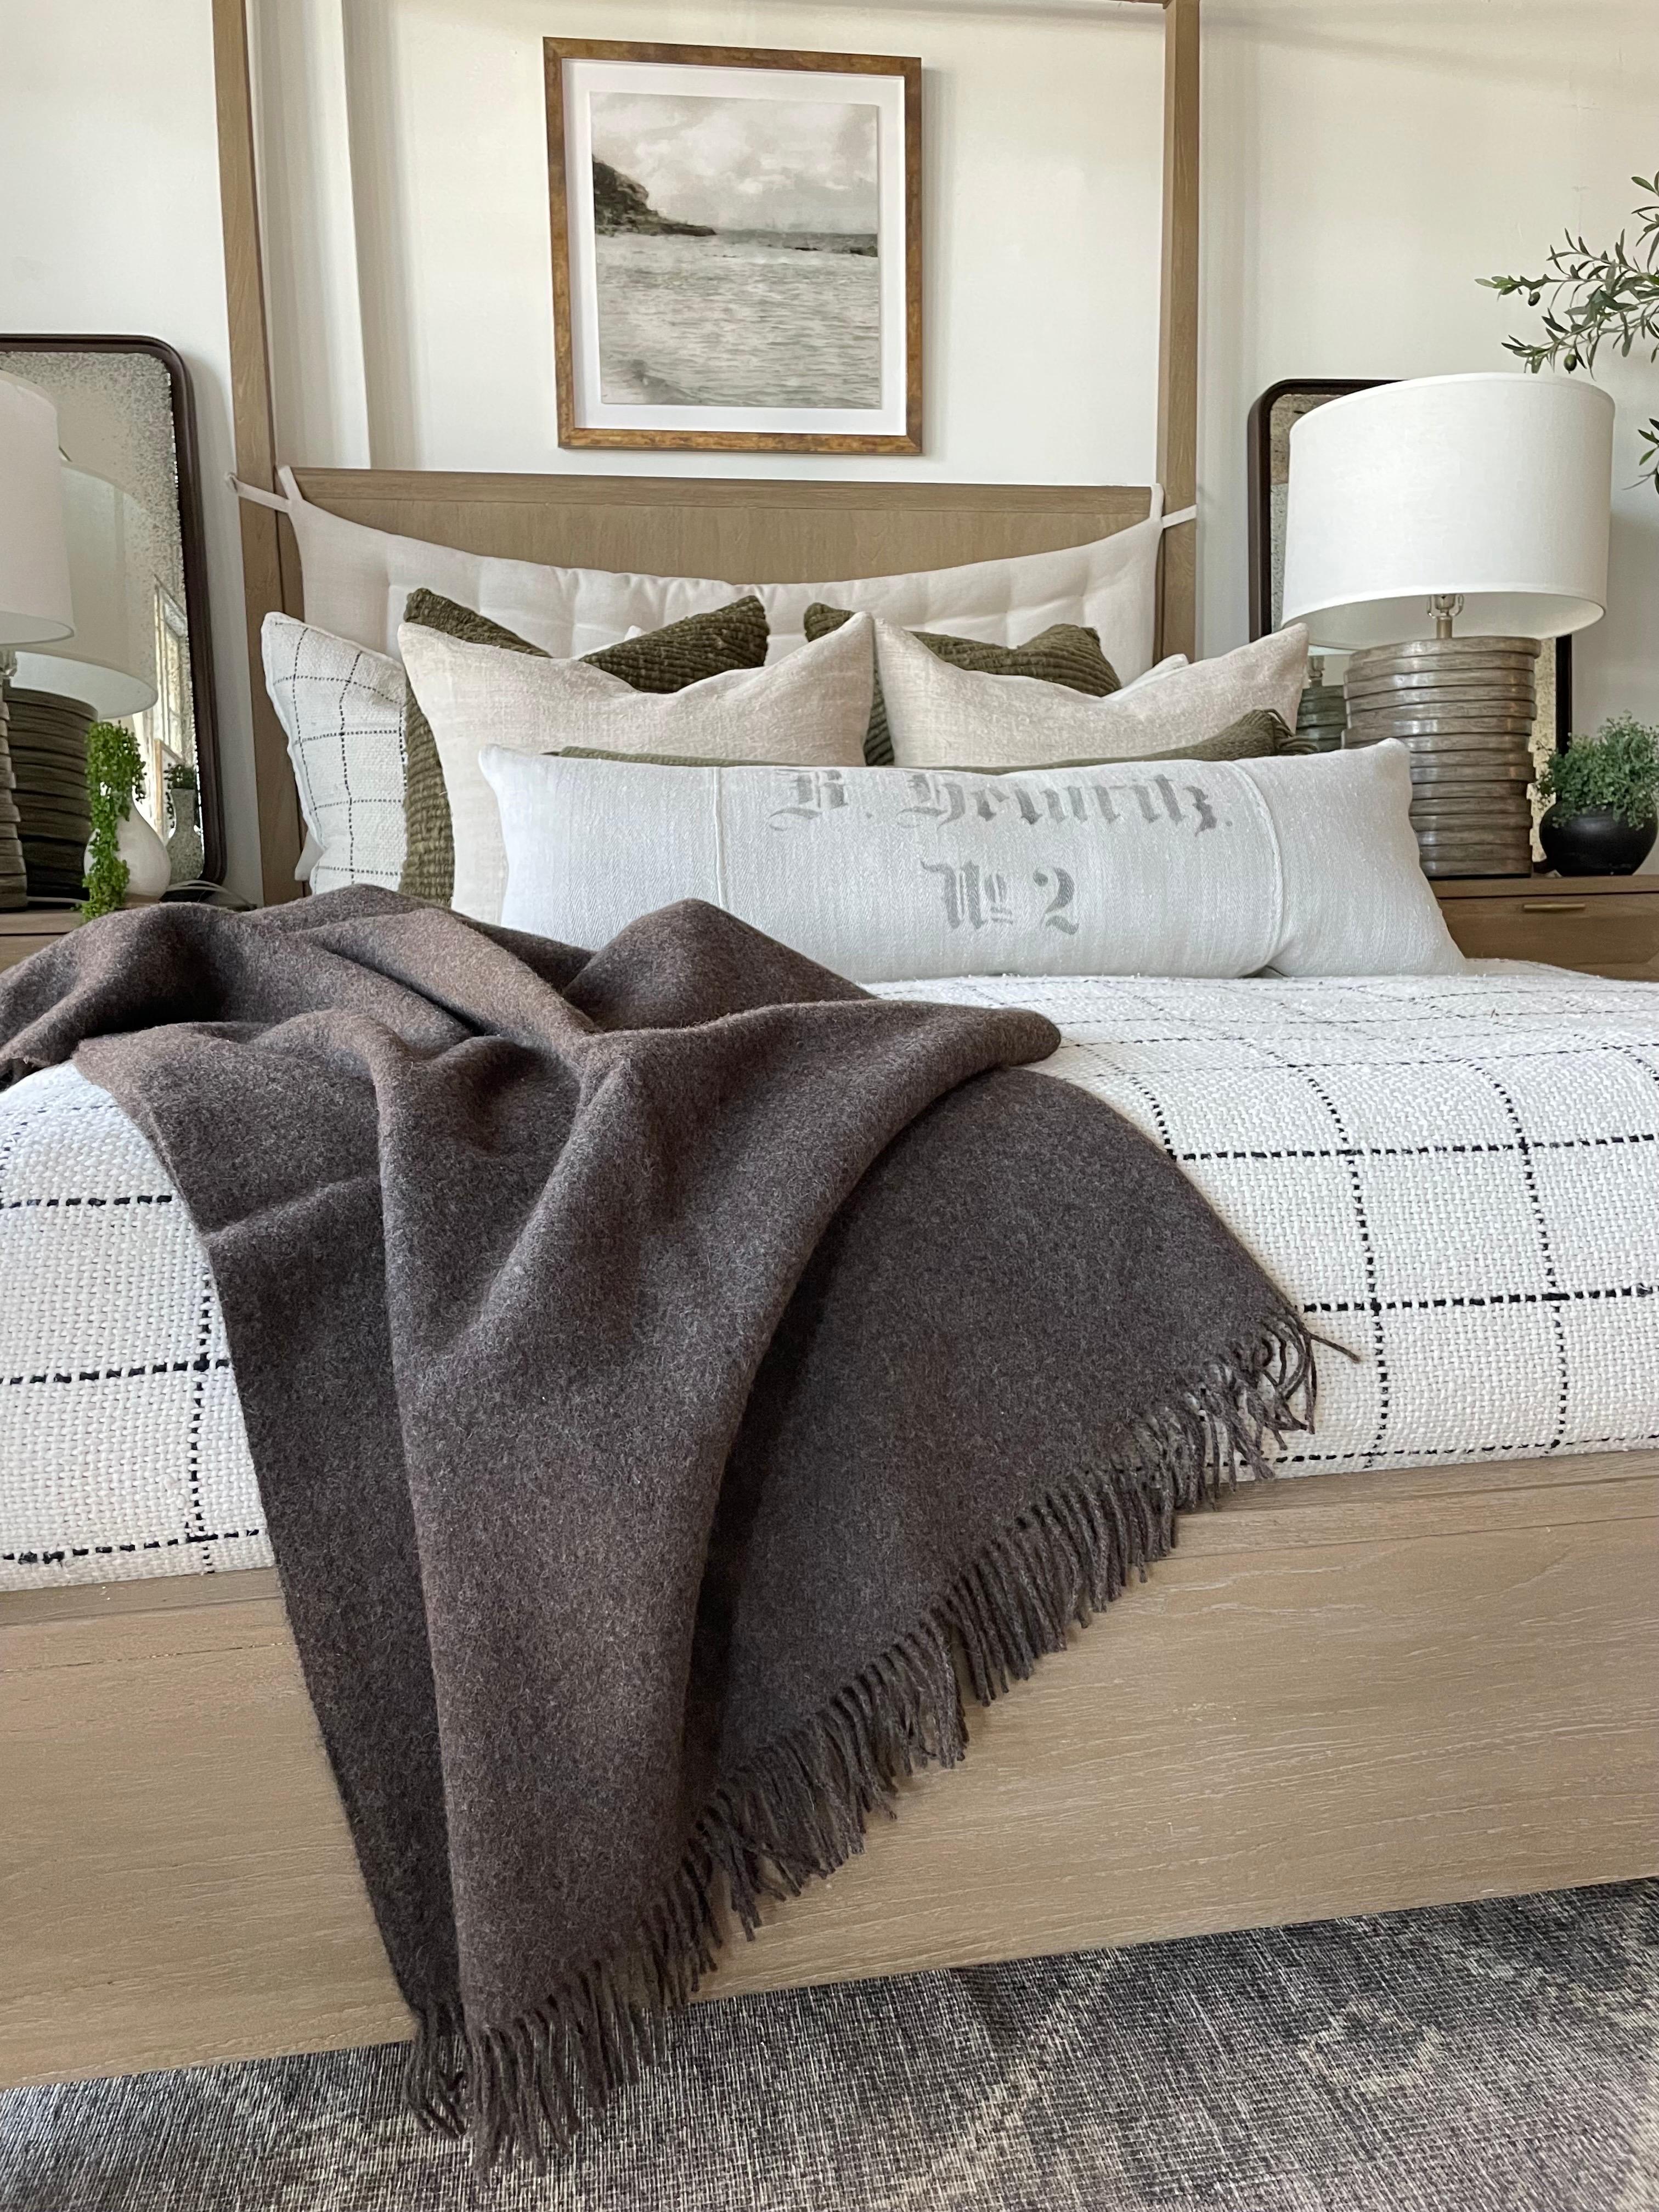 Verlieben Sie sich in unsere bezaubernde Decke Julia aus Alpakawolle und echter Schafwolle. Die Qualität ist 100% natürlich, weshalb Sie eine extreme Weichheit erleben werden, sowohl im Aussehen als auch beim Fühlen der schönen Decke. Ein exklusiver